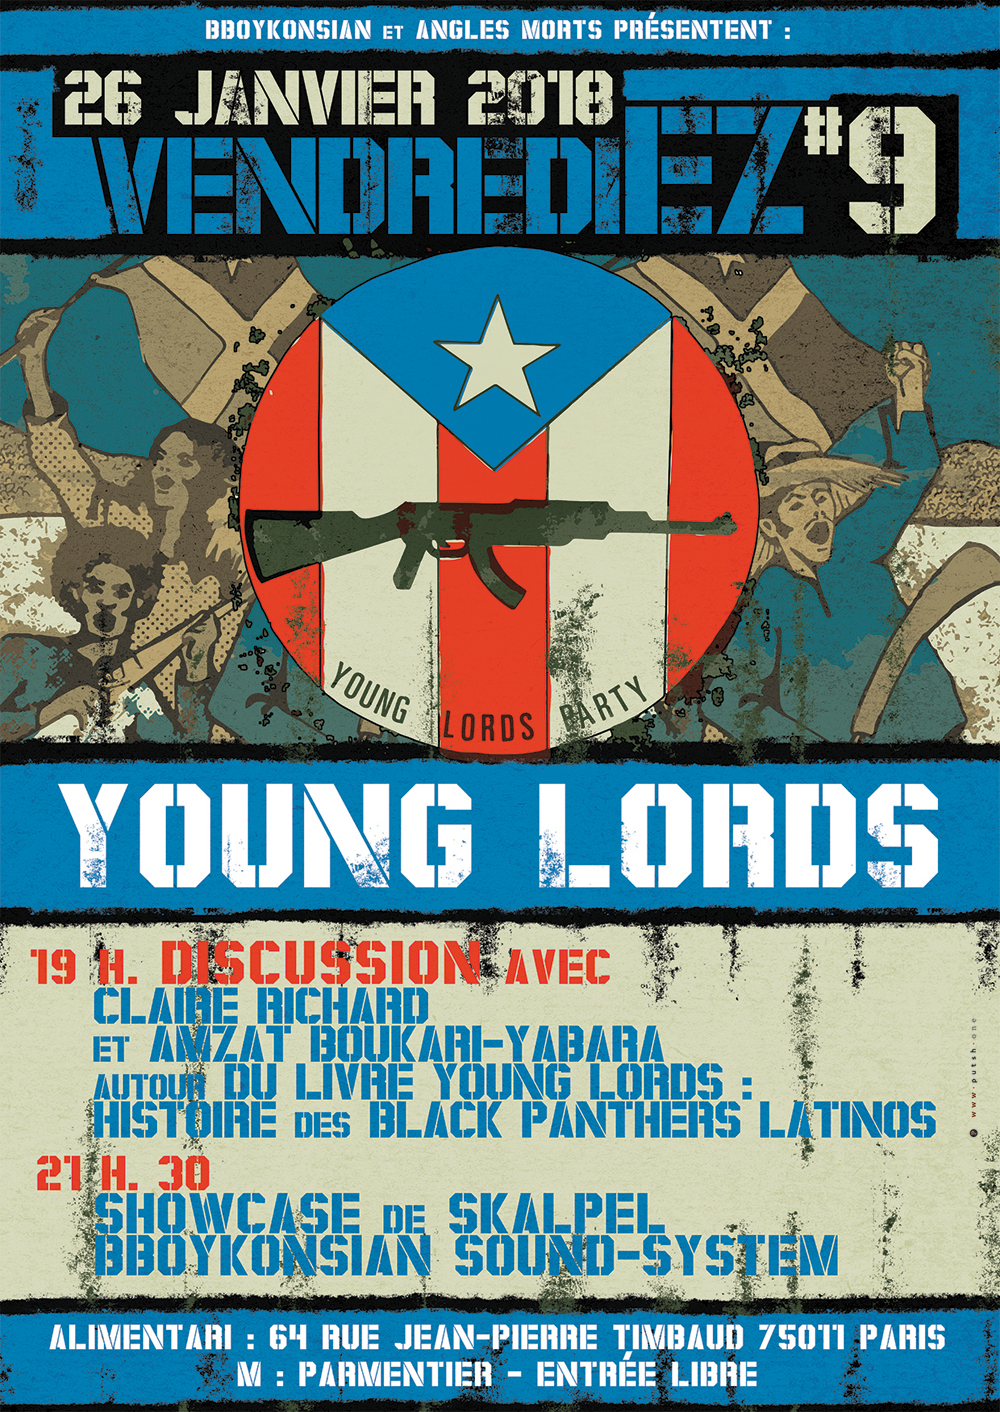 VendrediEZ #9 : Discussion autour du livre "Young Lords : histoire des Black Panthers latinos" le 26 janvier 2018 à Paris